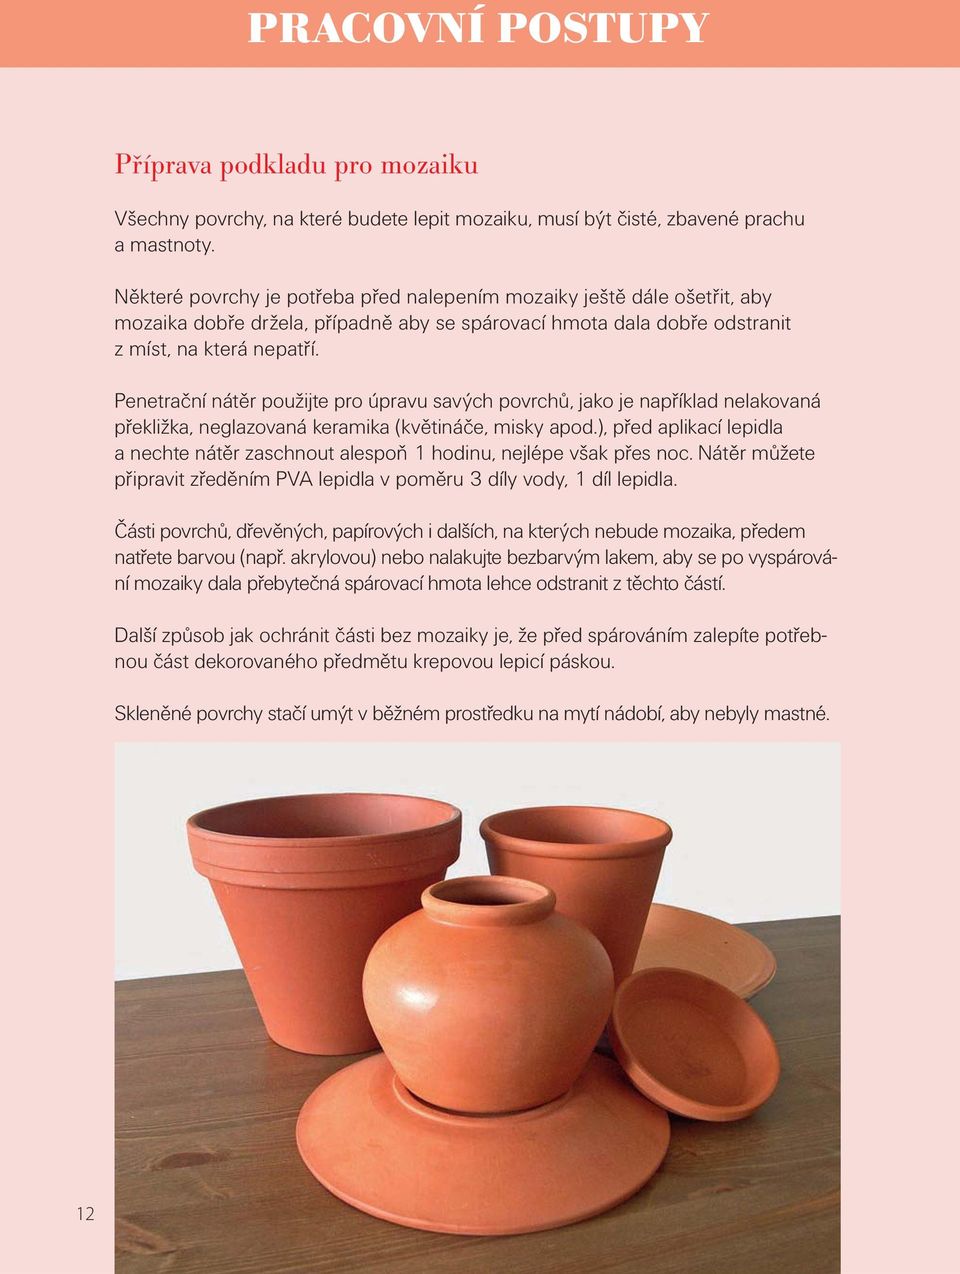 Penetrační nátěr použijte pro úpravu savých povrchů, jako je například nelakovaná překližka, neglazovaná keramika (květináče, misky apod.